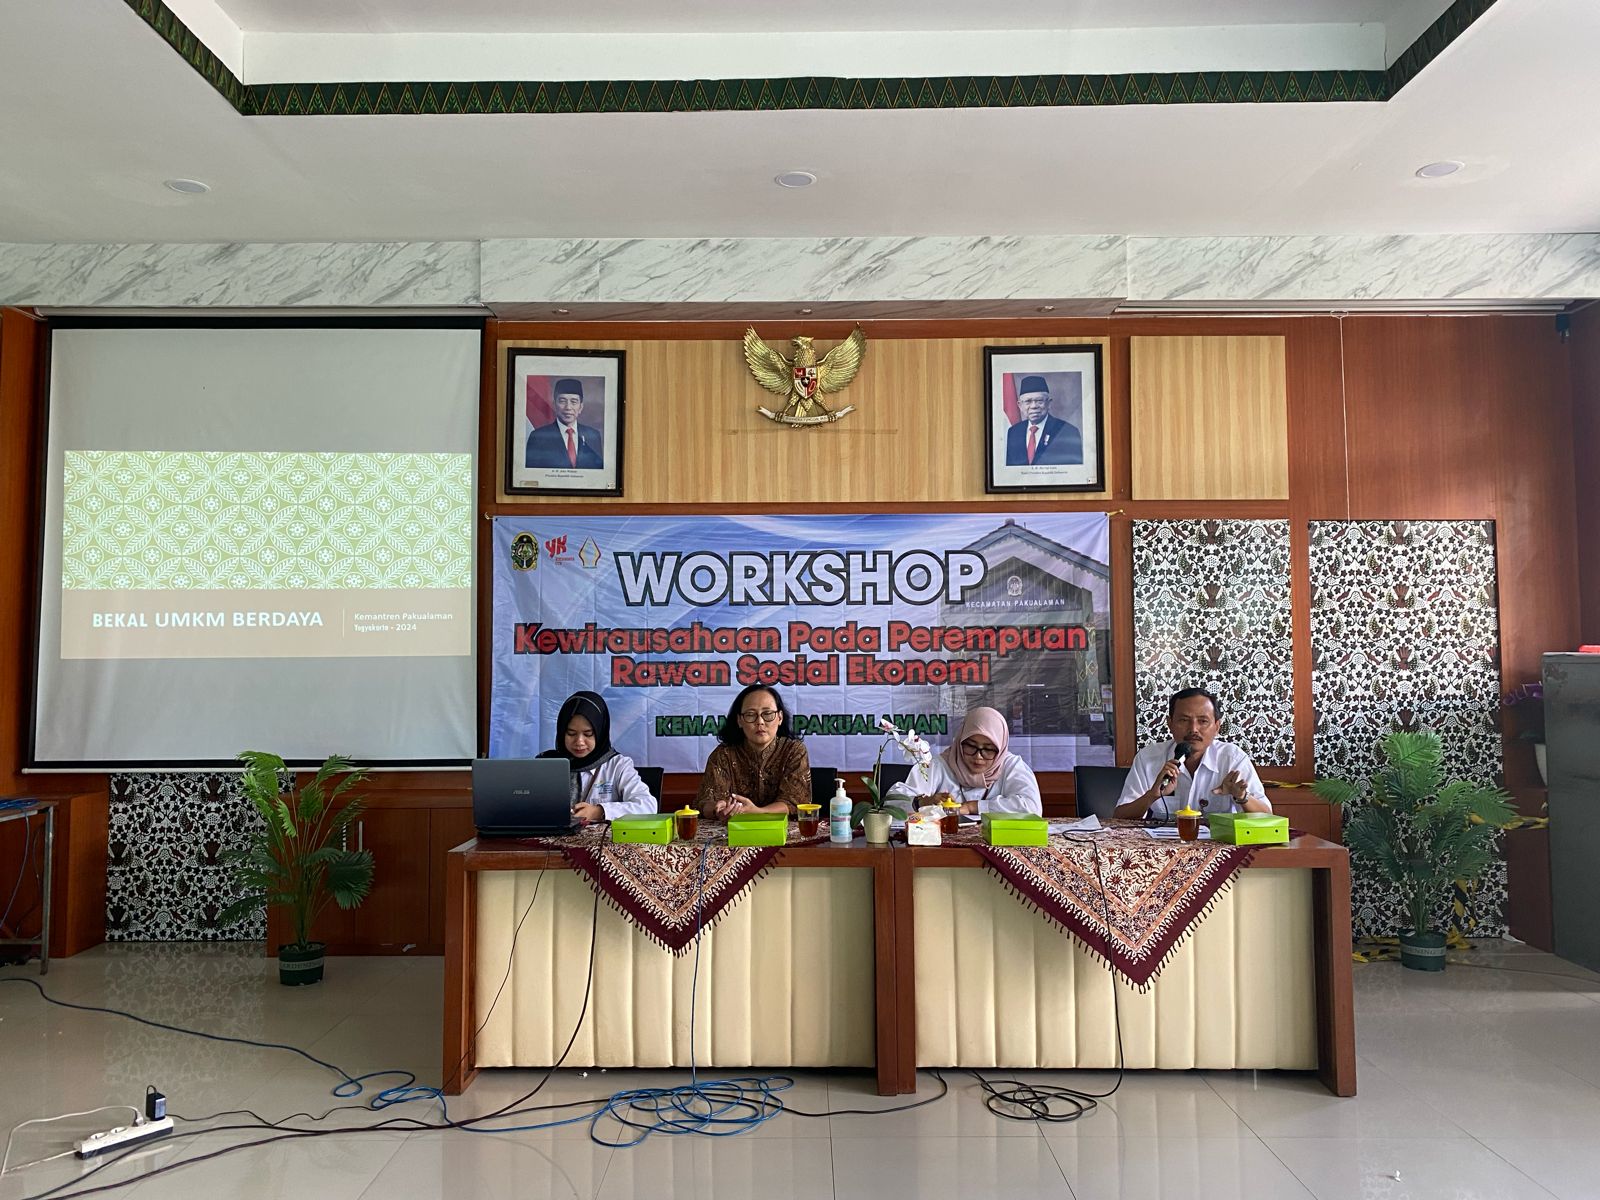 Workshop Kewirausahaan Pada Perempuan Rawan Sosial Ekonomi